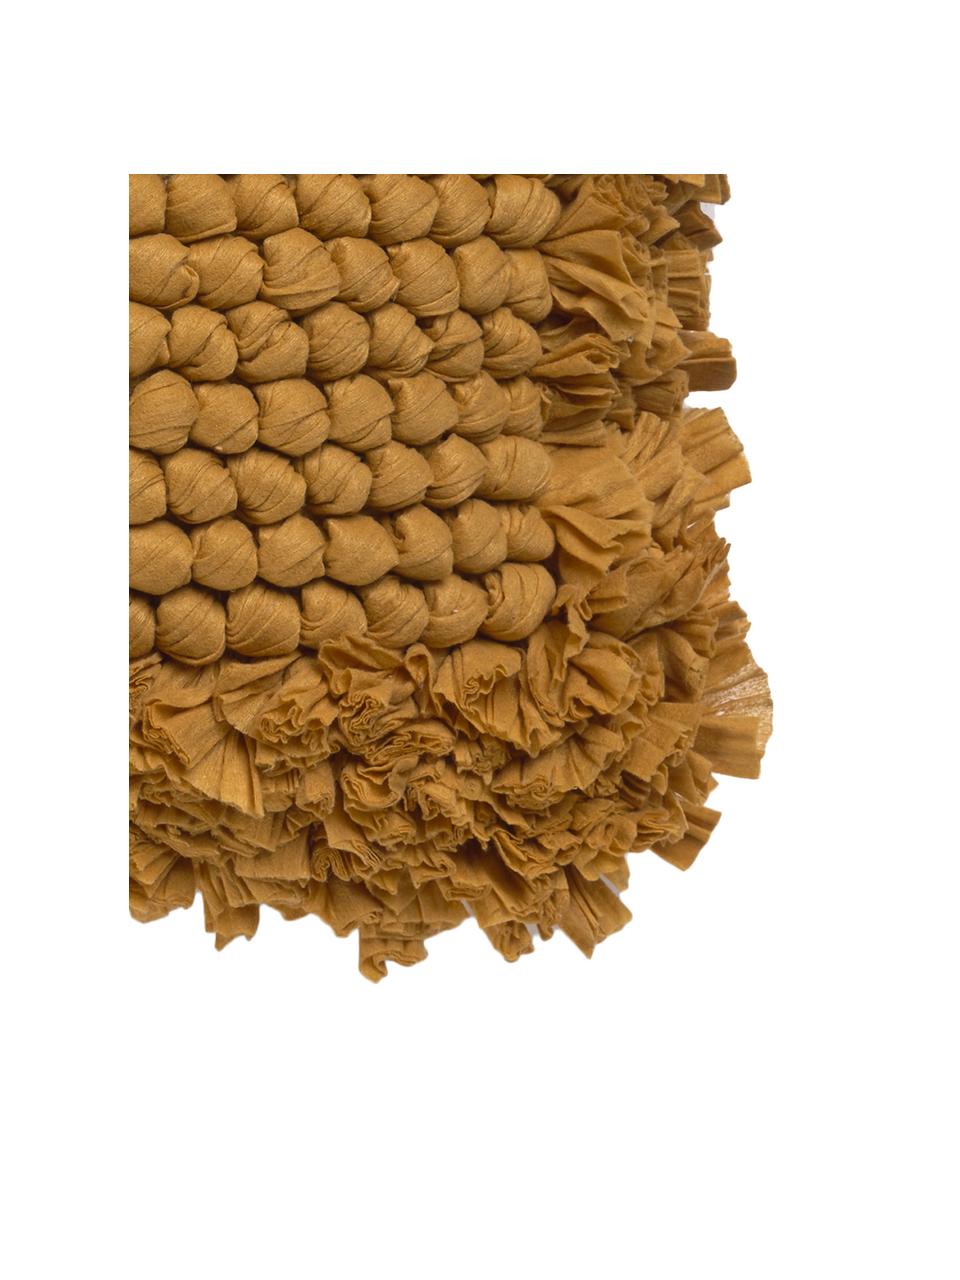 Kussenhoes Aqia met gestructureerde oppervlak, 50% katoen 50% polyester, Mosterdgeel, 45 x 45 cm